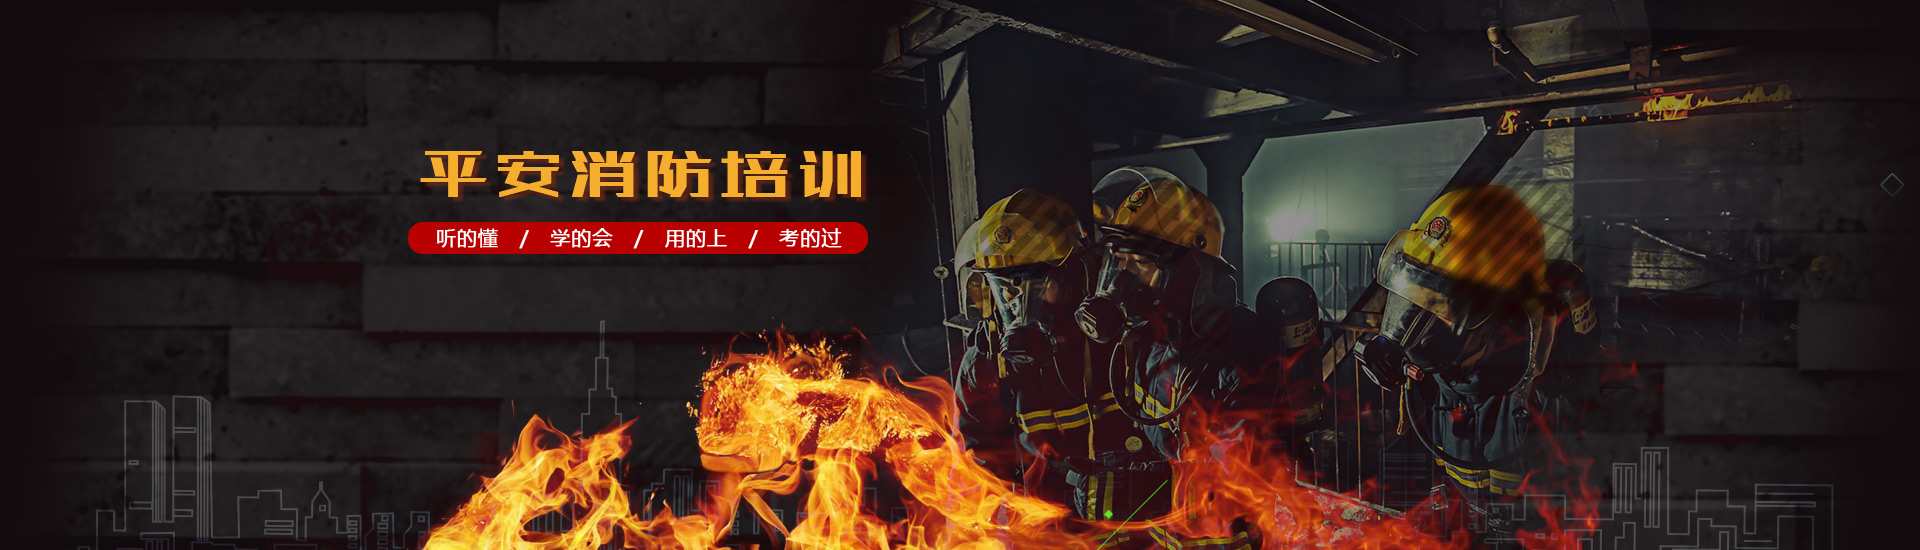 徐州消防培訓